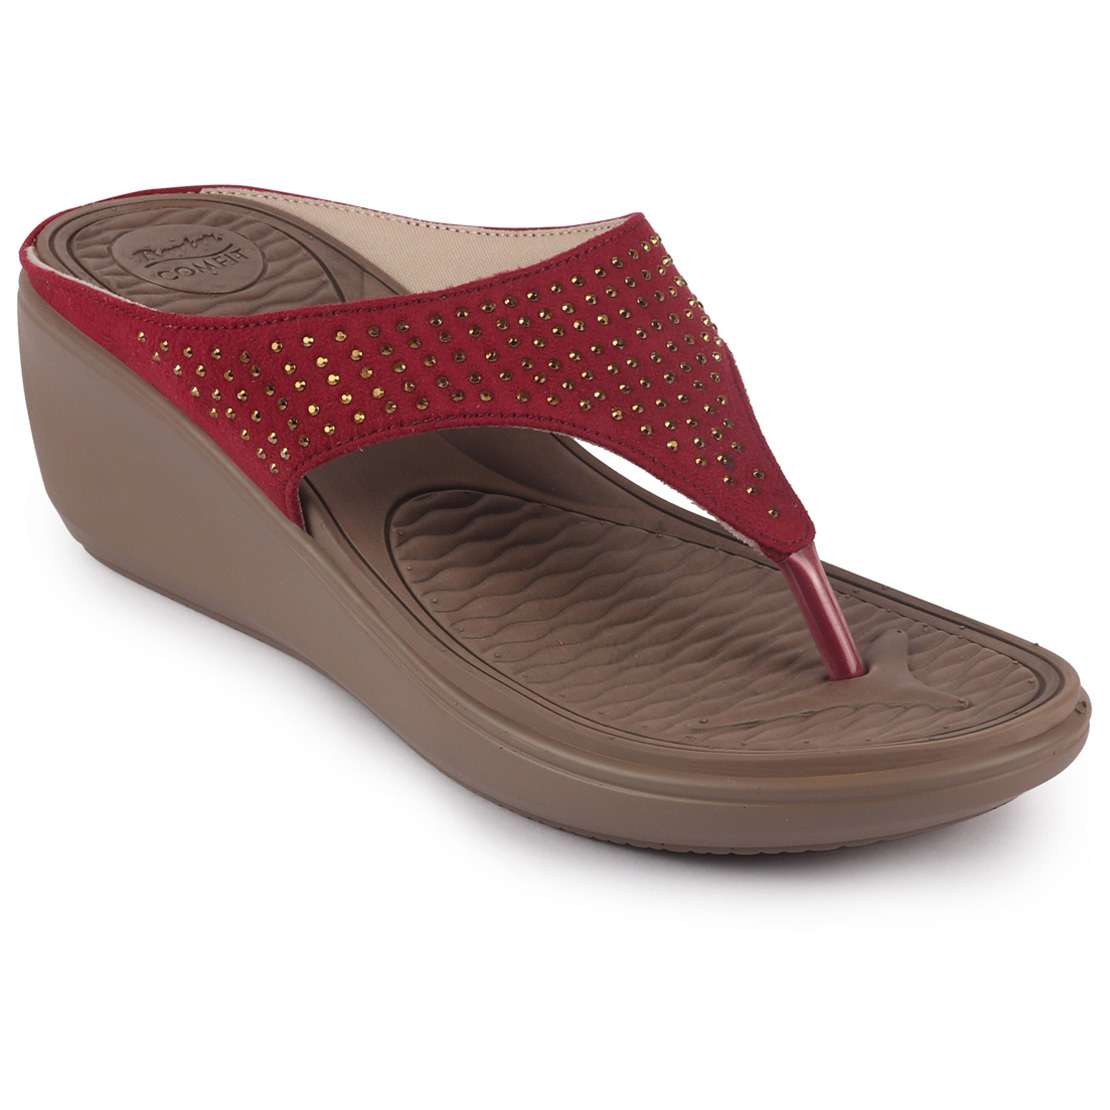 Buy Bata Comfit Women's Red Leather Slip On Wedge Slipper Online ...